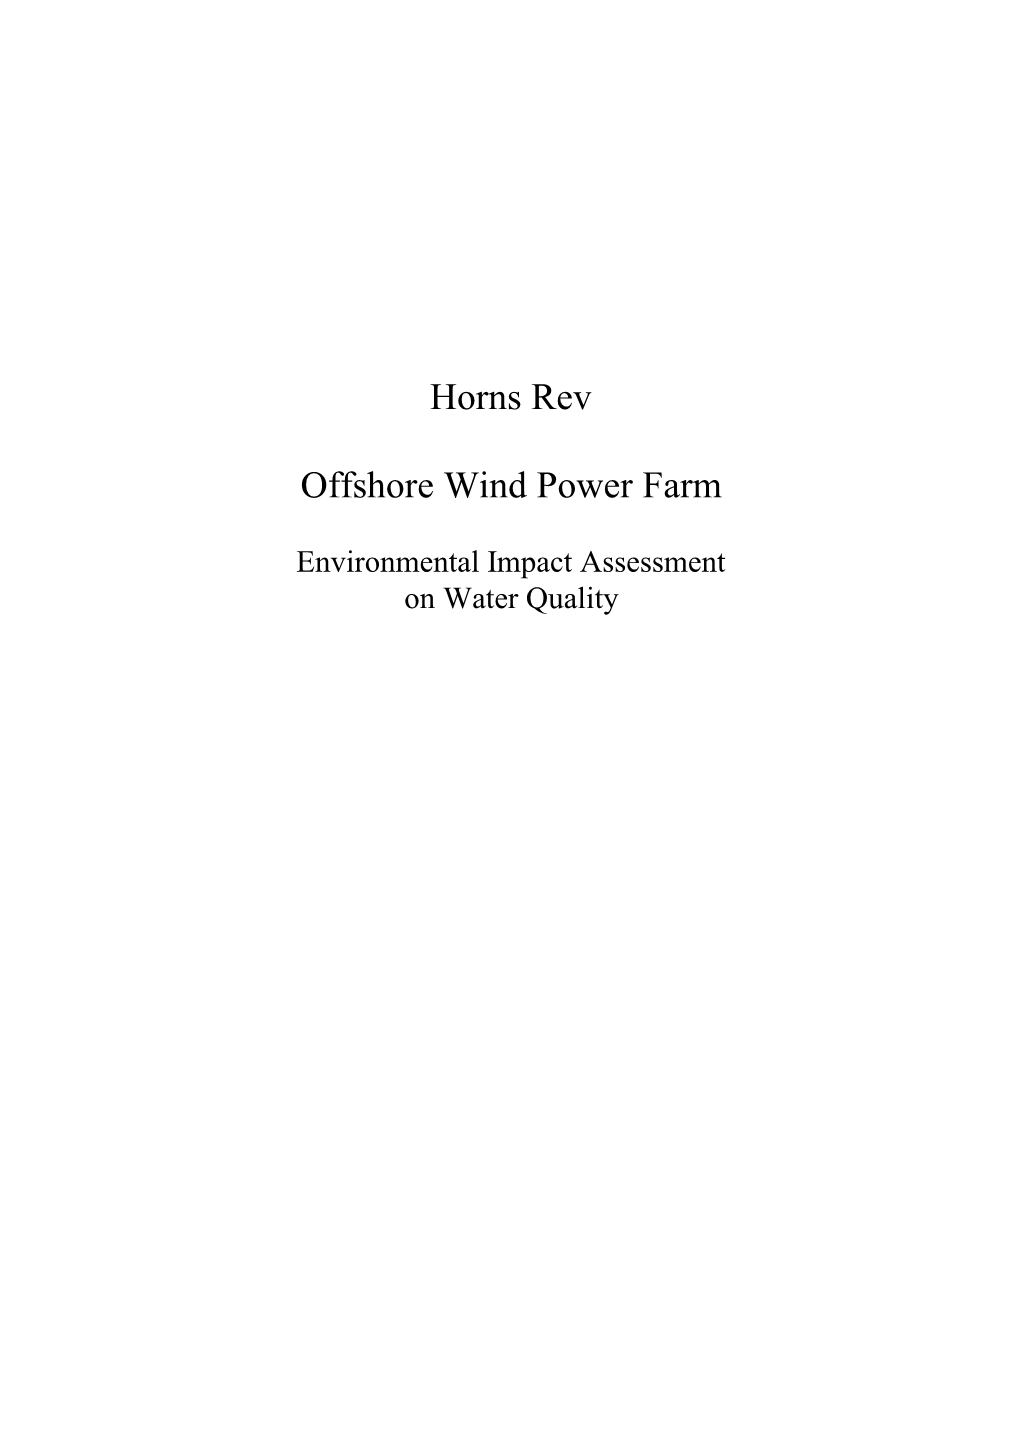 Horns Rev Offshore Wind Power Farm. Environmental Impact Assessment